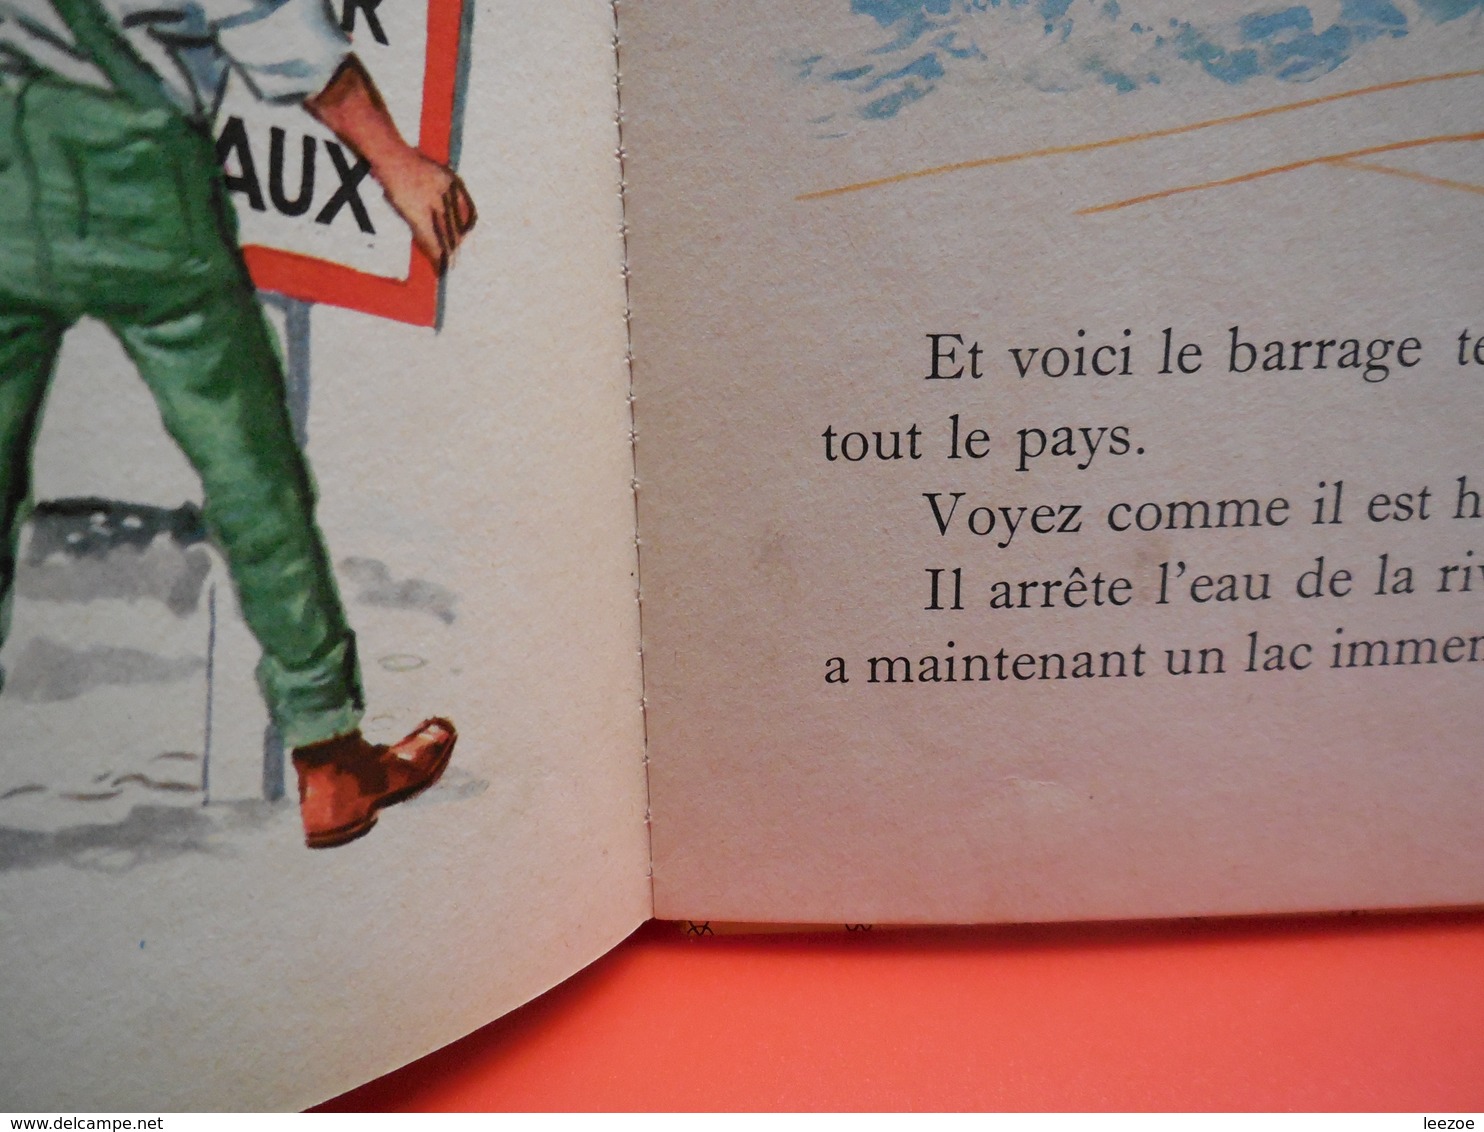 collection farandole Le Petit Ingénieur. Texte de Gilbert Delahaye, illustration de Fred et Liliane Funcken. ....3A0420